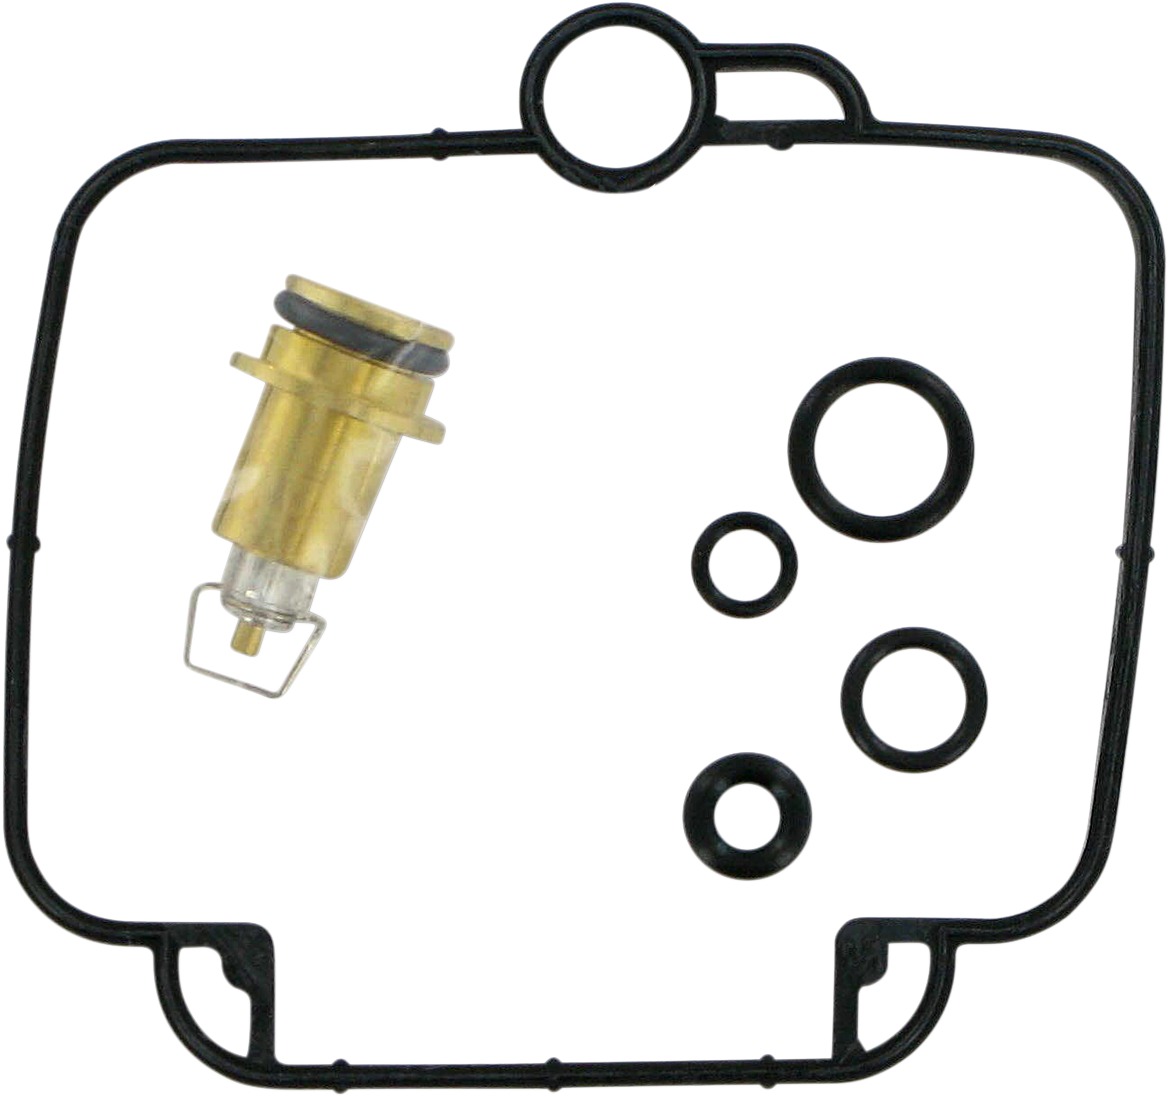 Carburetor Repair Kit - For 91-95 Suzuki GSXR750 - Click Image to Close